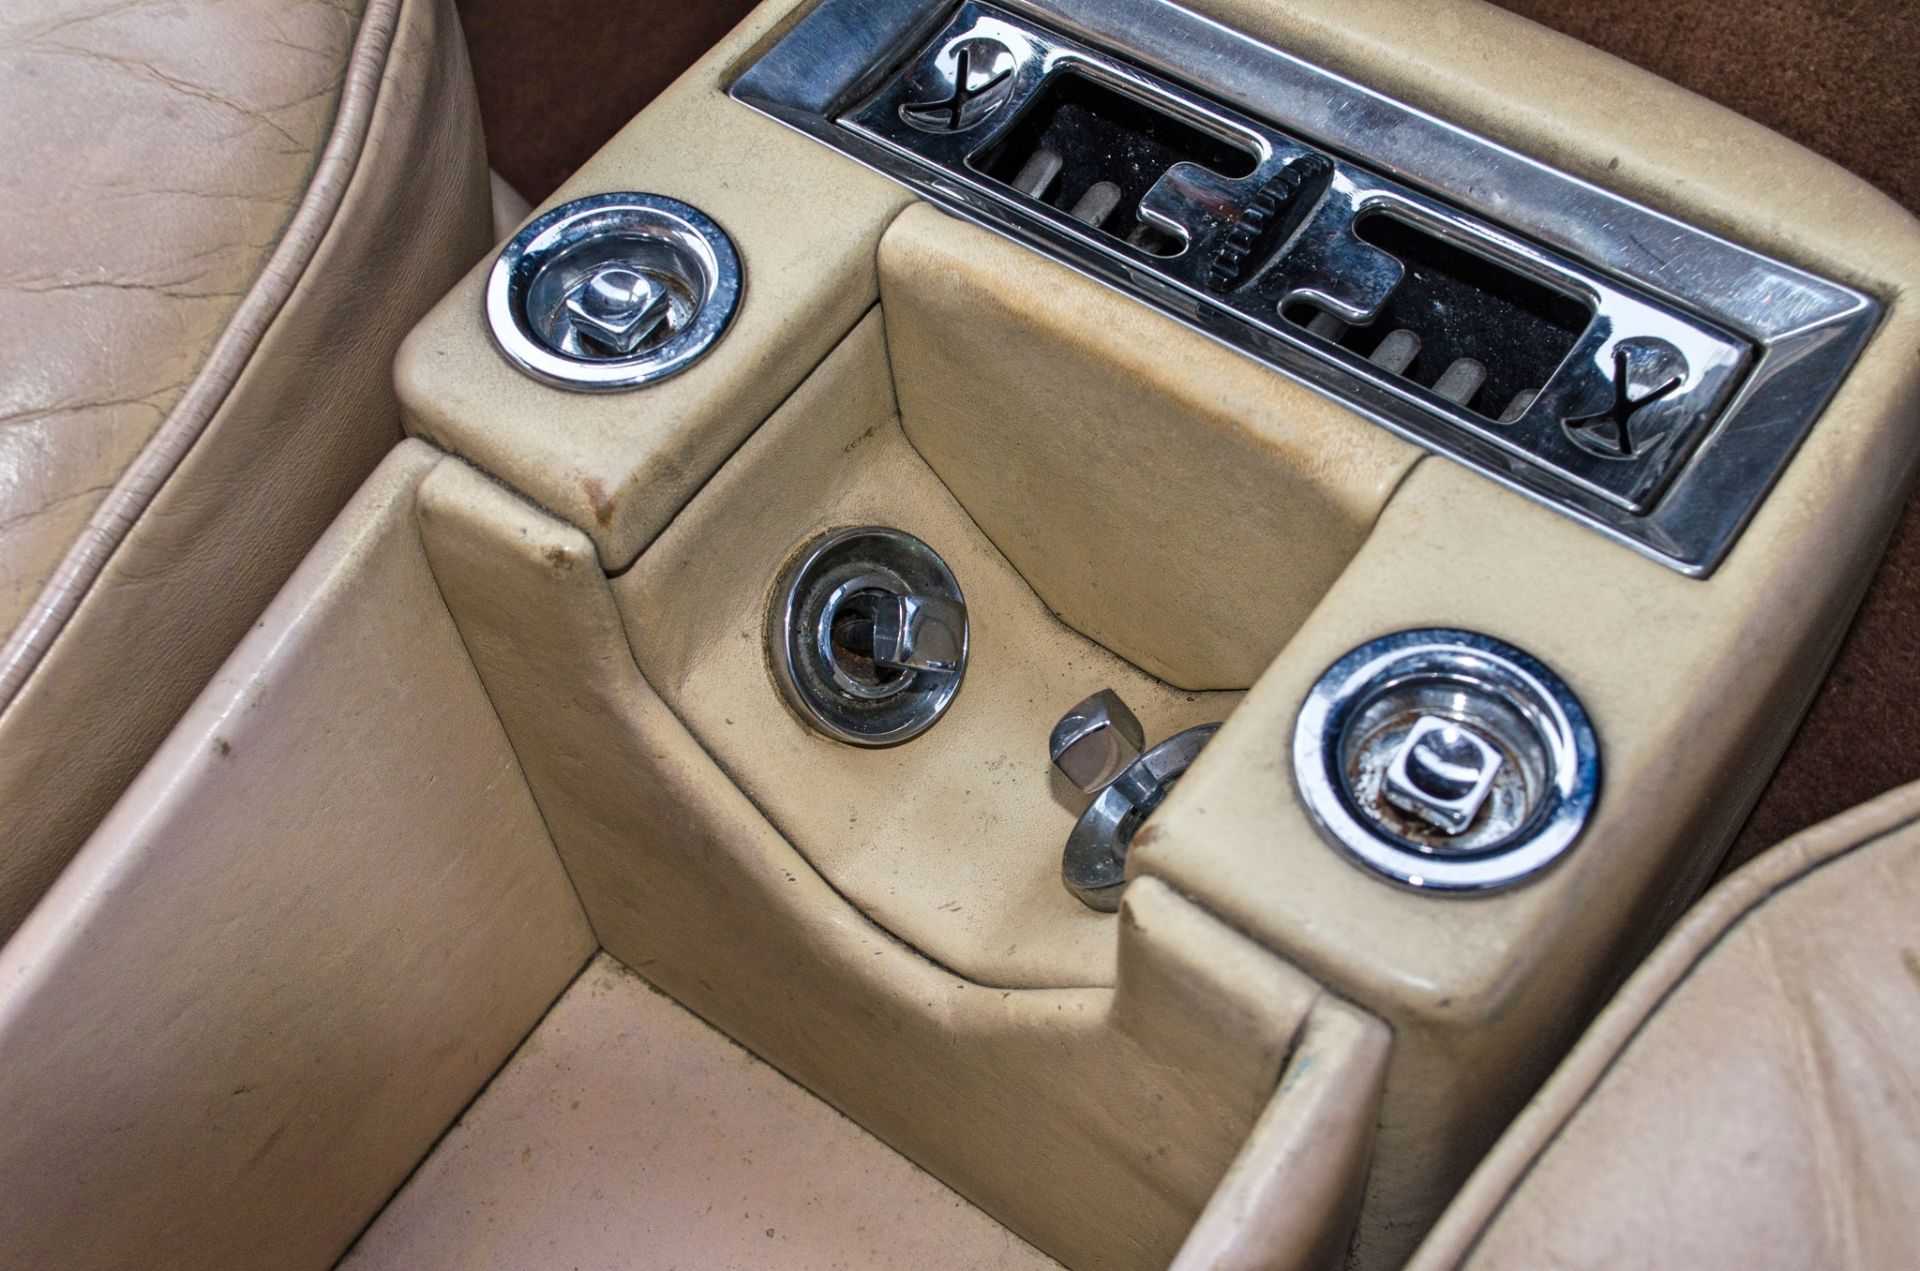 1981 Rolls Royce Silver Spirit 6750cc 4 door saloon - Image 47 of 56